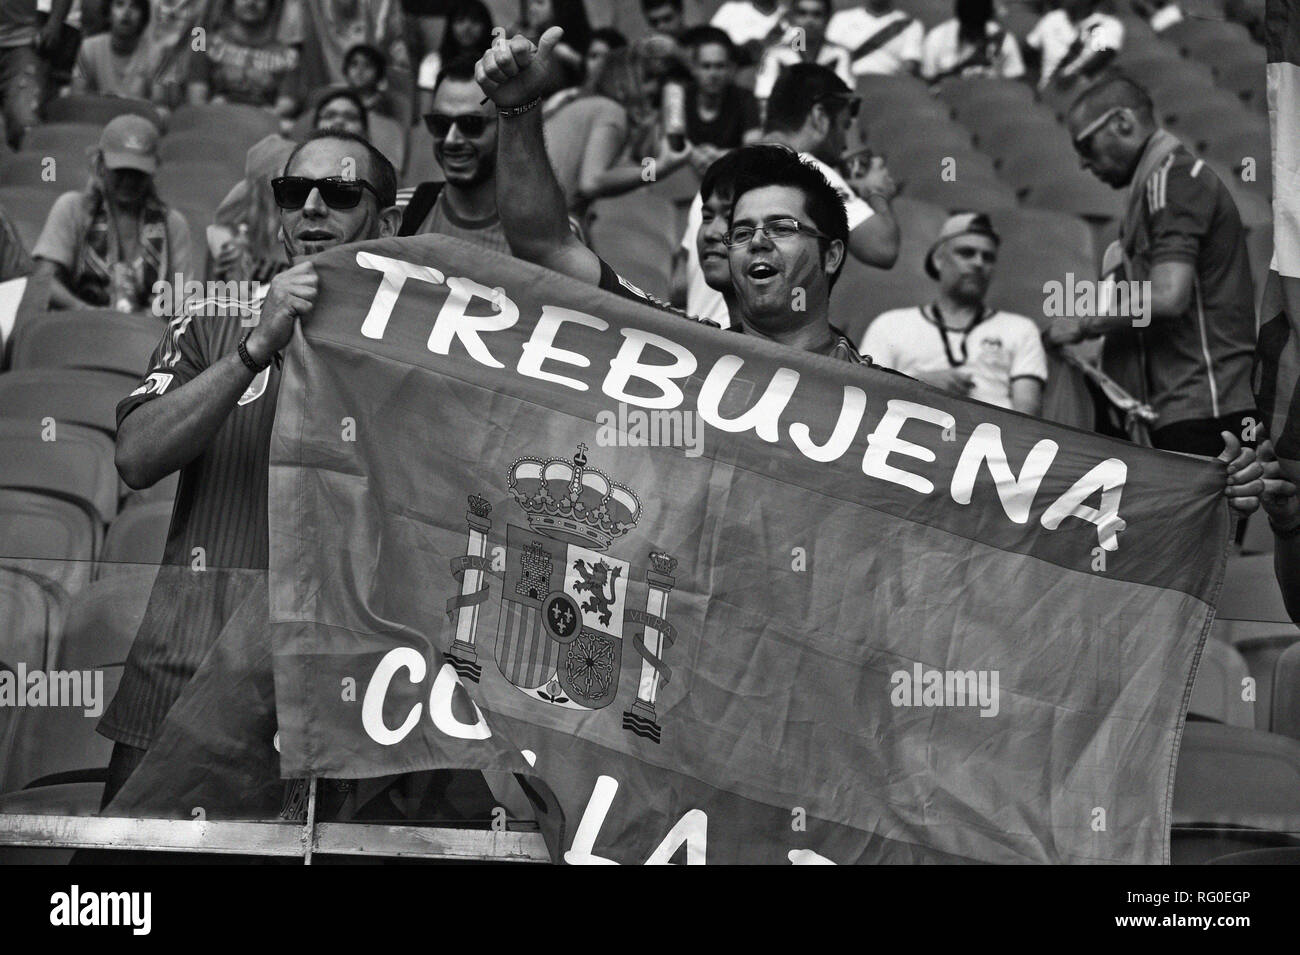 Les partisans espagnols, la Fifa World Cup 2014, Salvador da Bahia, Brésil#  Banque D'Images